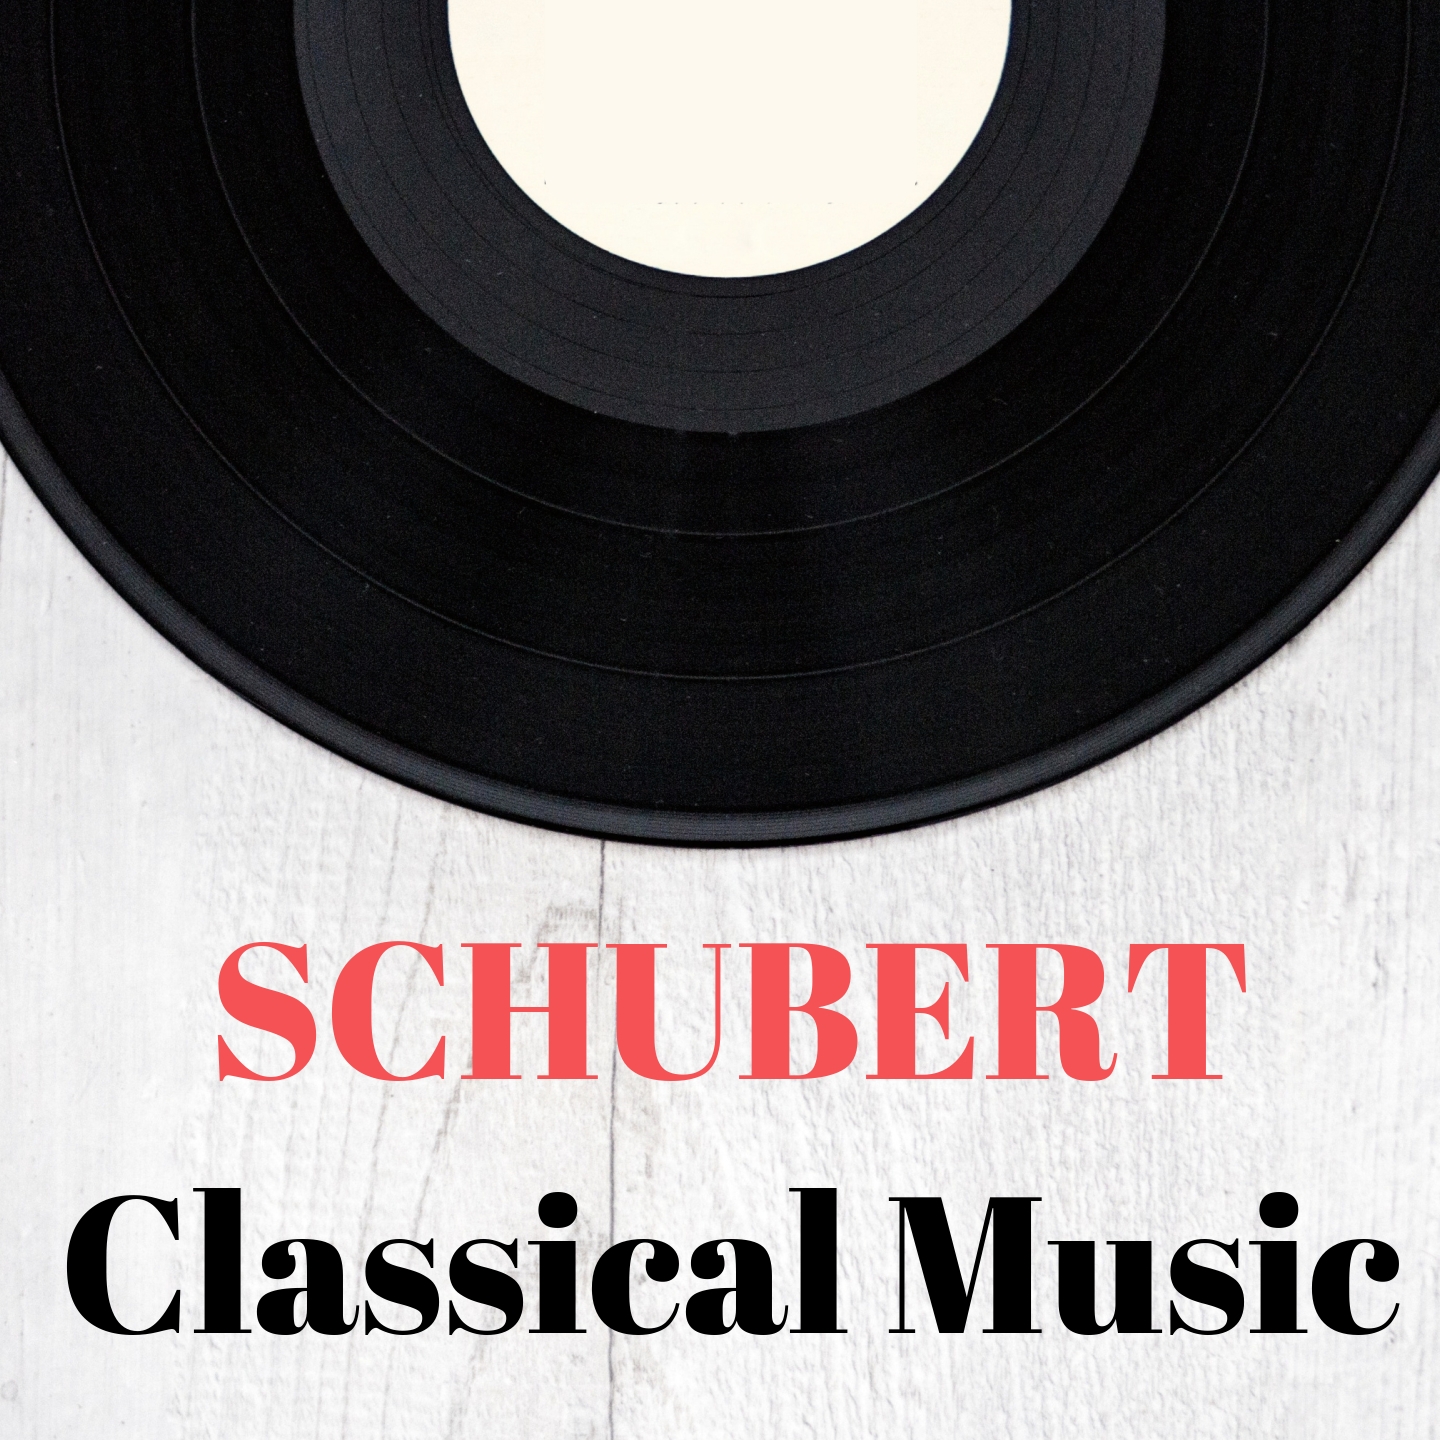 Schubert Classical Music